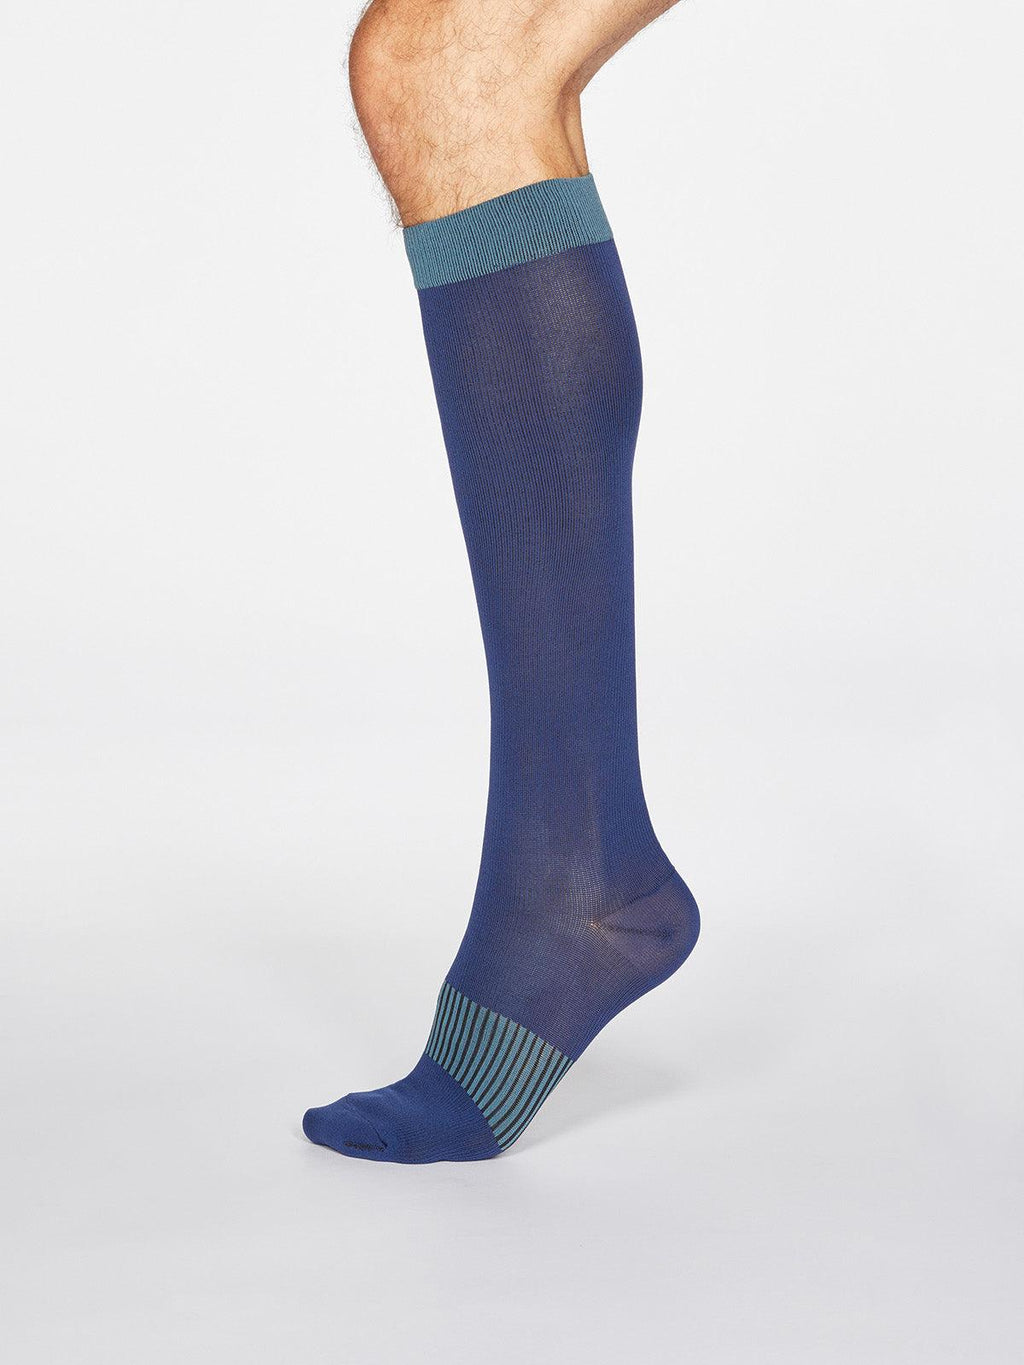 https://www.wearethought.com/cdn/shop/products/SPM666-DENIM-BLUE--Declan-Spotty-Recycled-Nylon-Flight-Socks-in-Denim-Blue-1.jpg?v=1654533756&width=1024